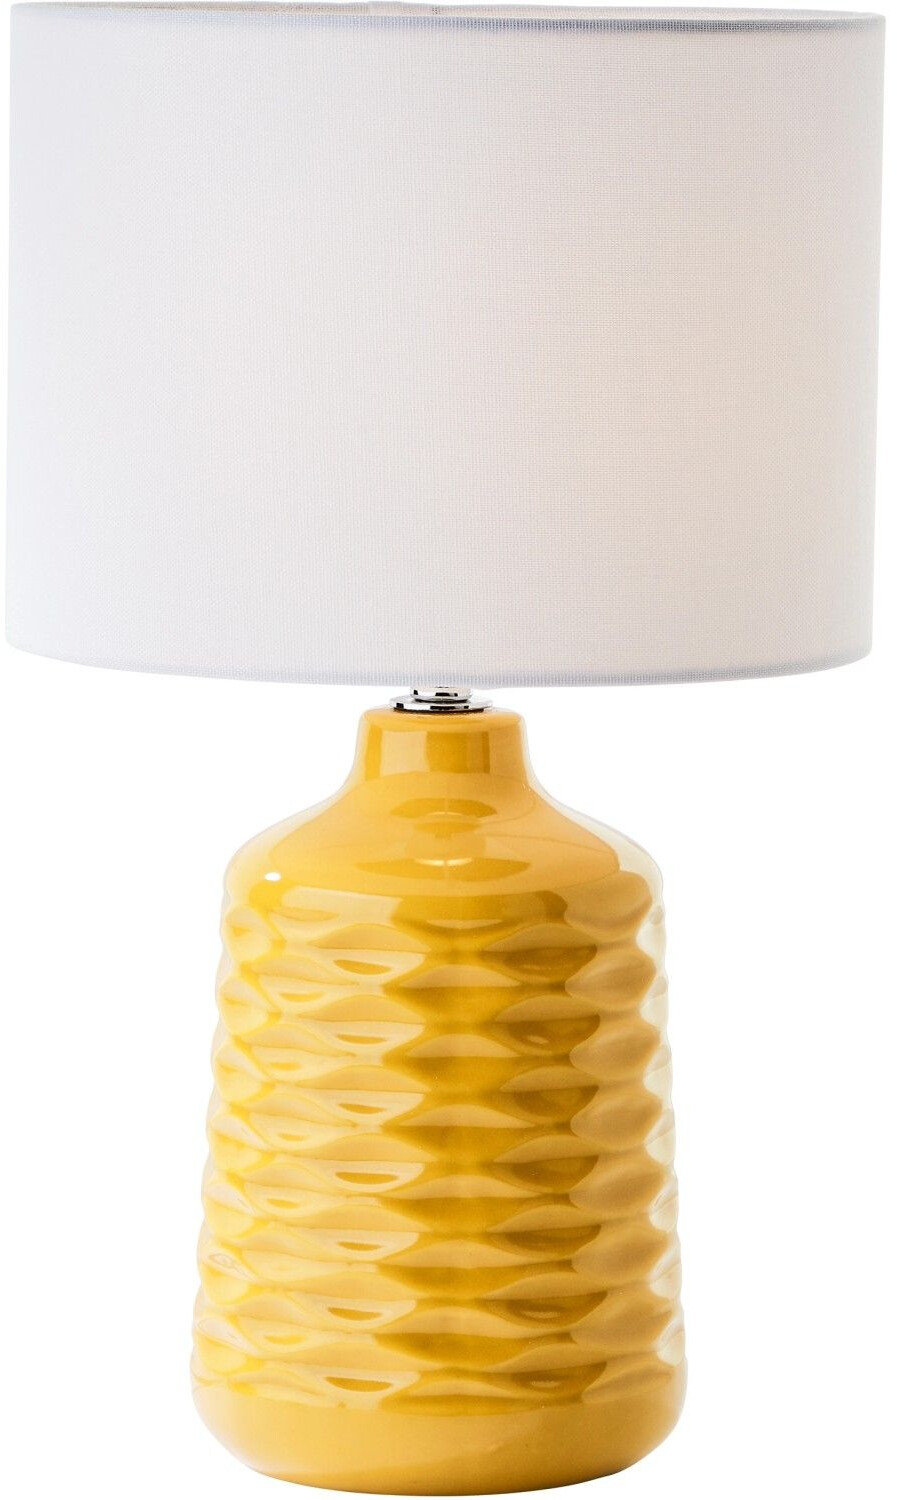 Brilliant Tischlampe Ilysa Stoffschirm weiß, Keramikfuß gelb ab 49,99 € |  Preisvergleich bei